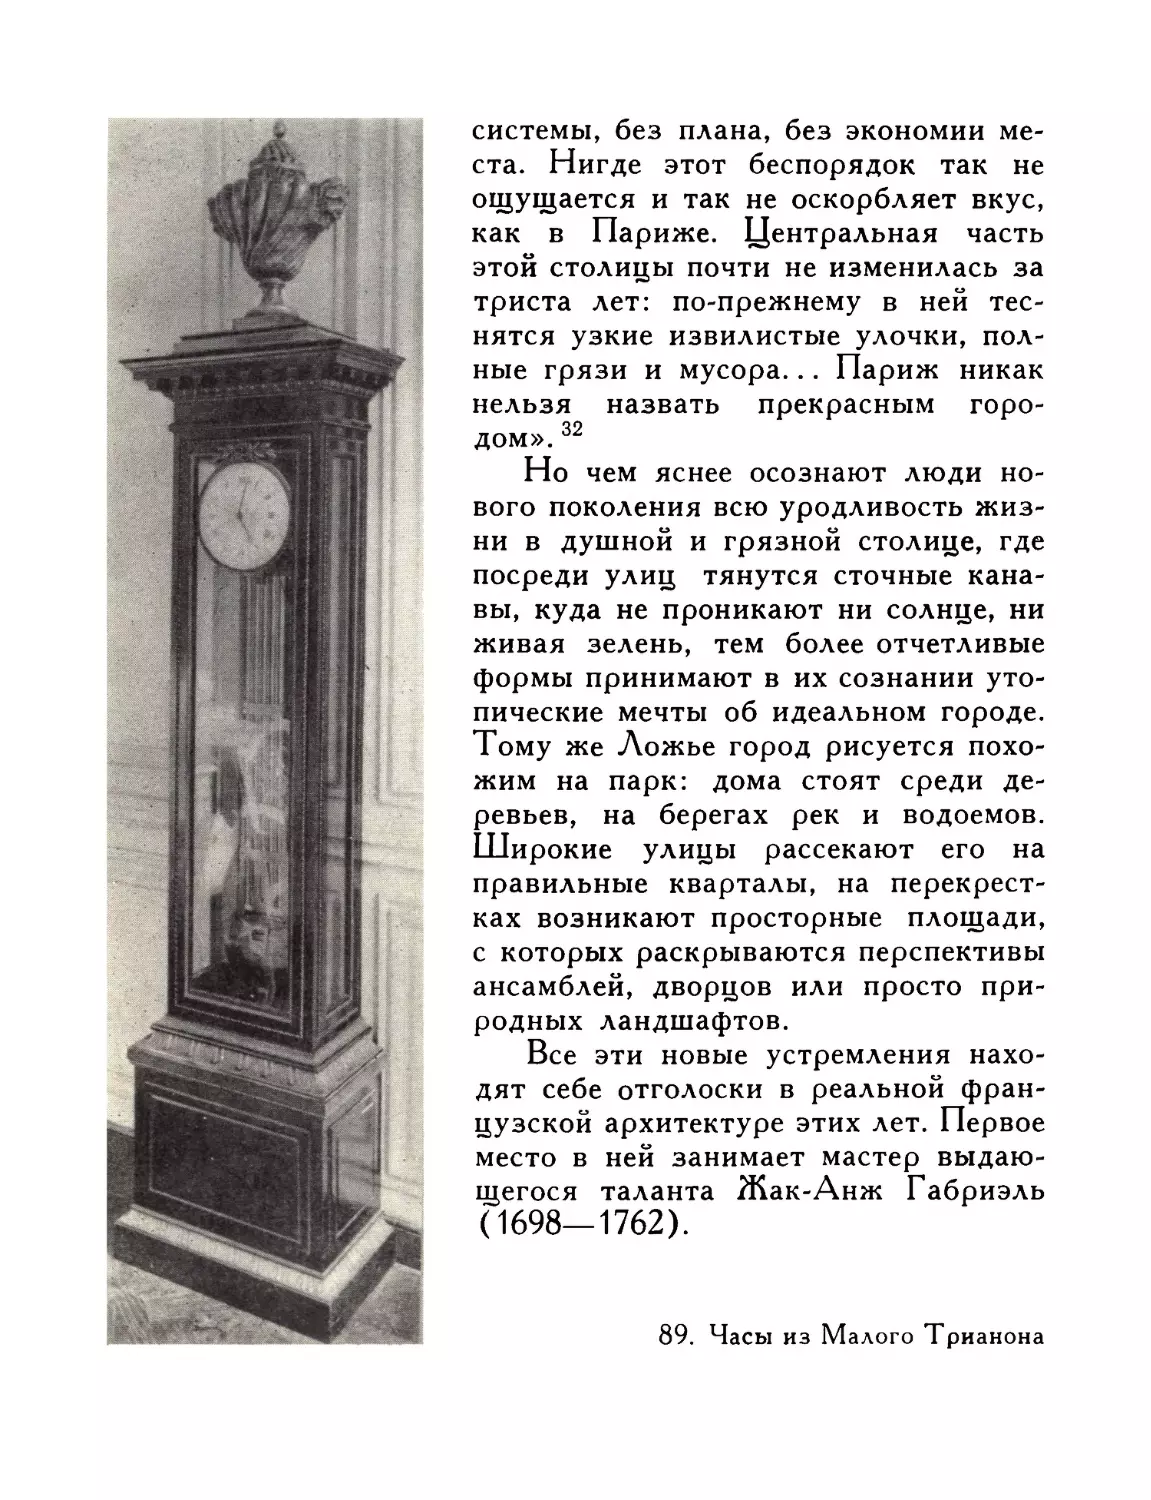 89.  Часы  из  Малого  Трианона.  Версаль,  Национальный  музей